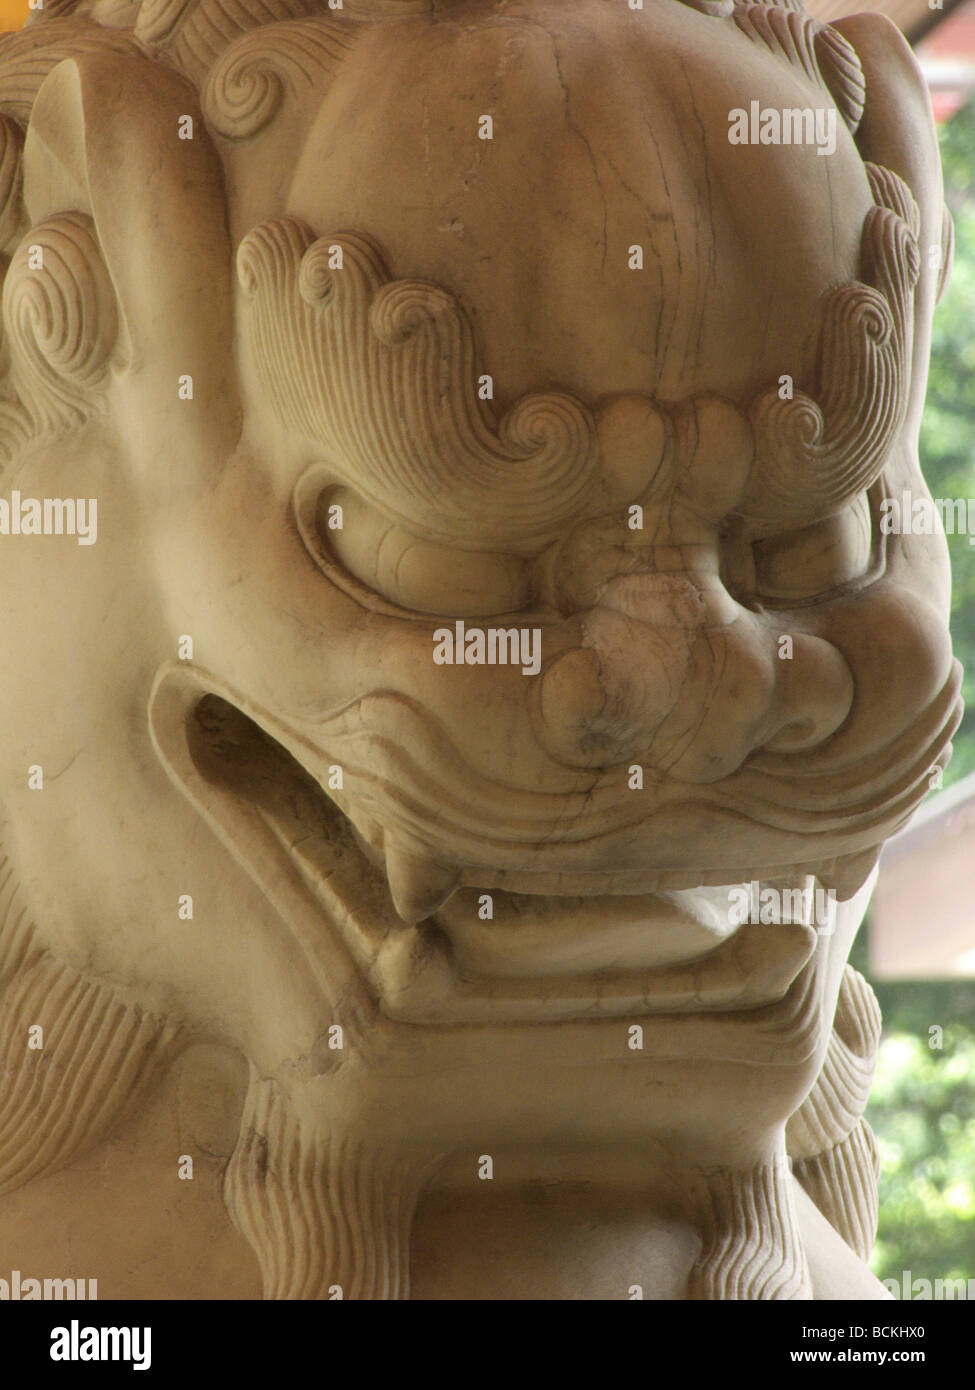 Cina Hong Kong Chinese leone di pietra statua presso la Banca di Cina building a guardia della banca Foto Stock